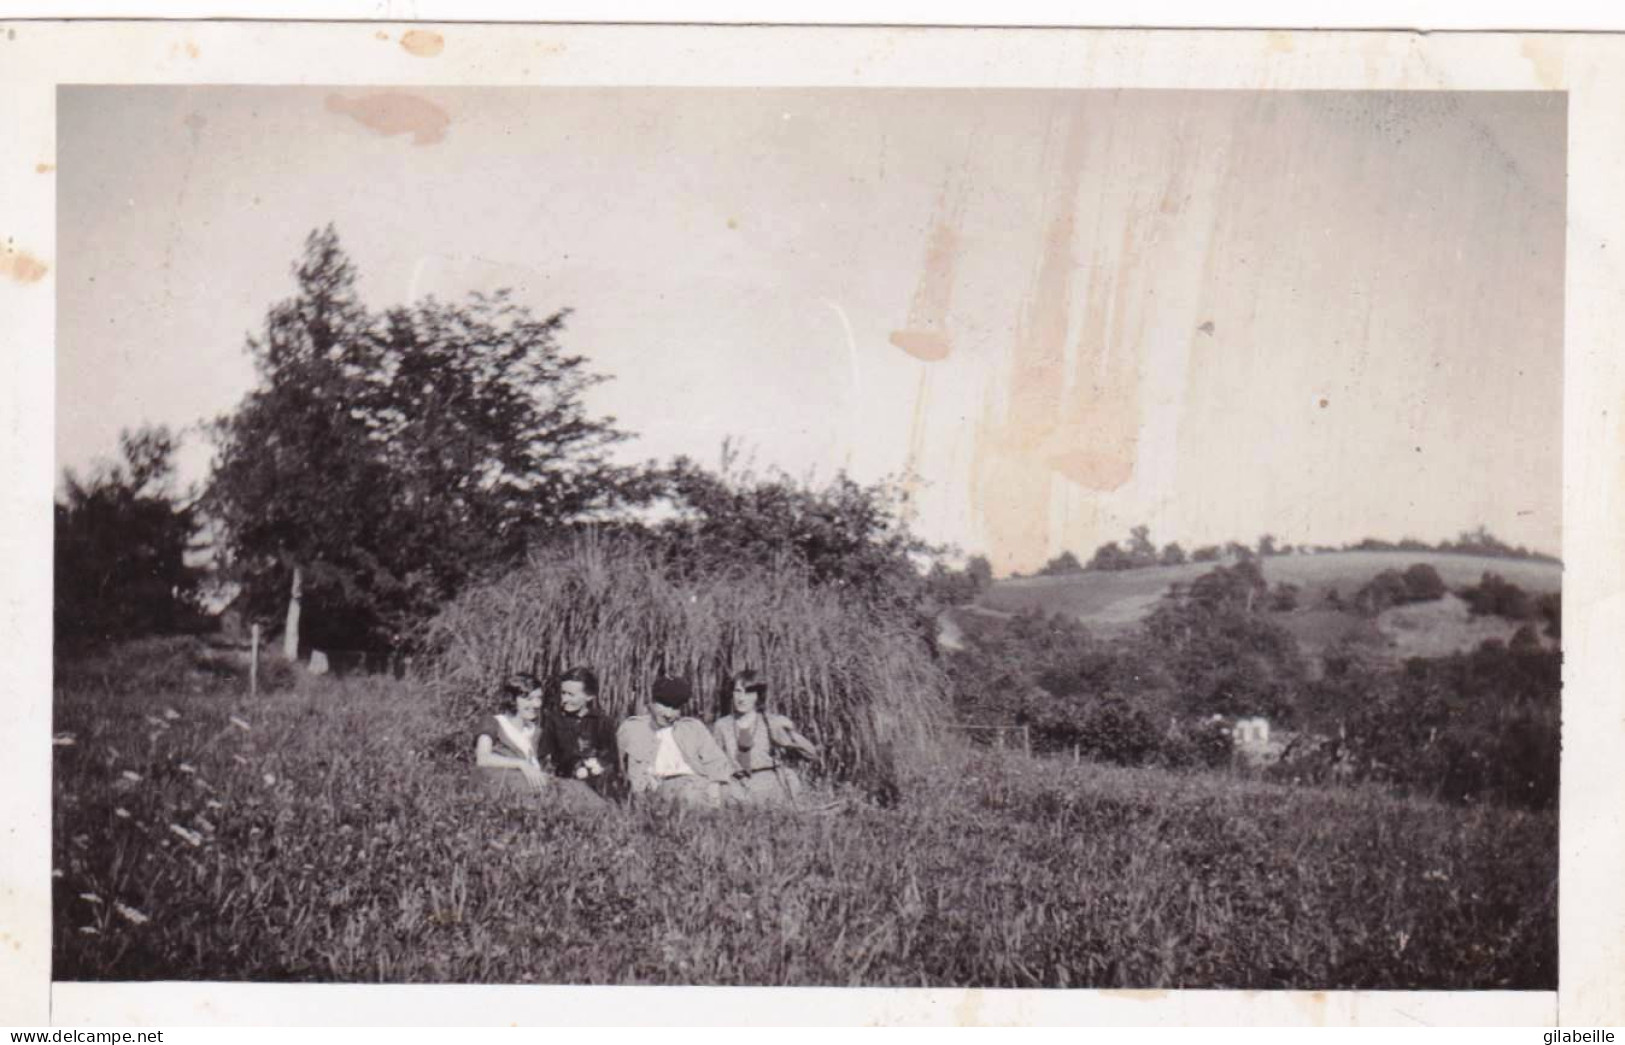 Photo Originale - 1931 - AUBERTIN (66 ) Pyrenées Atlantiques - Dans Le Pré Devant Le Presbytere - Luoghi